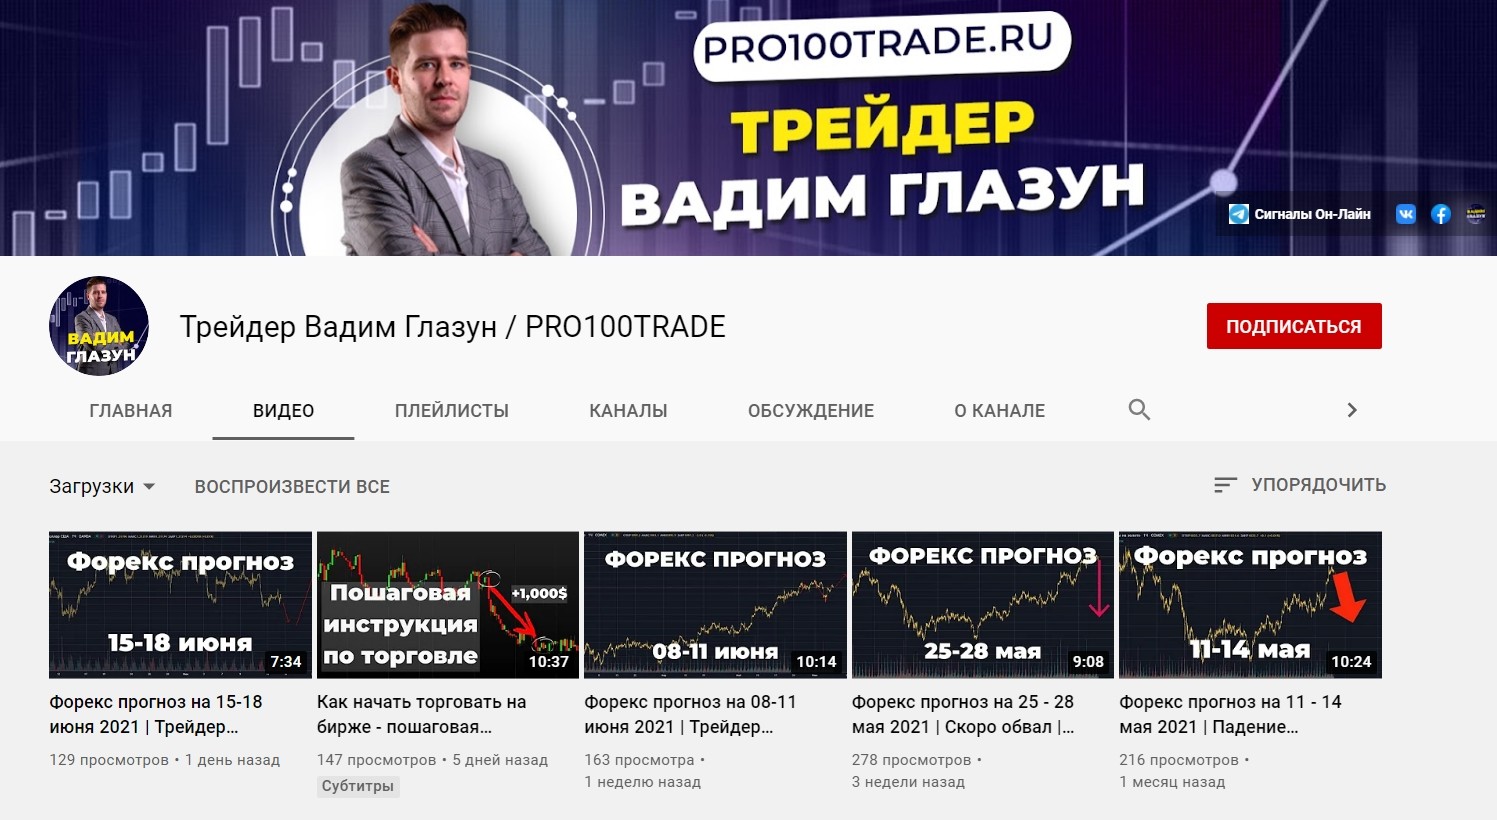 Ютуб Канал Вадима Глазуна